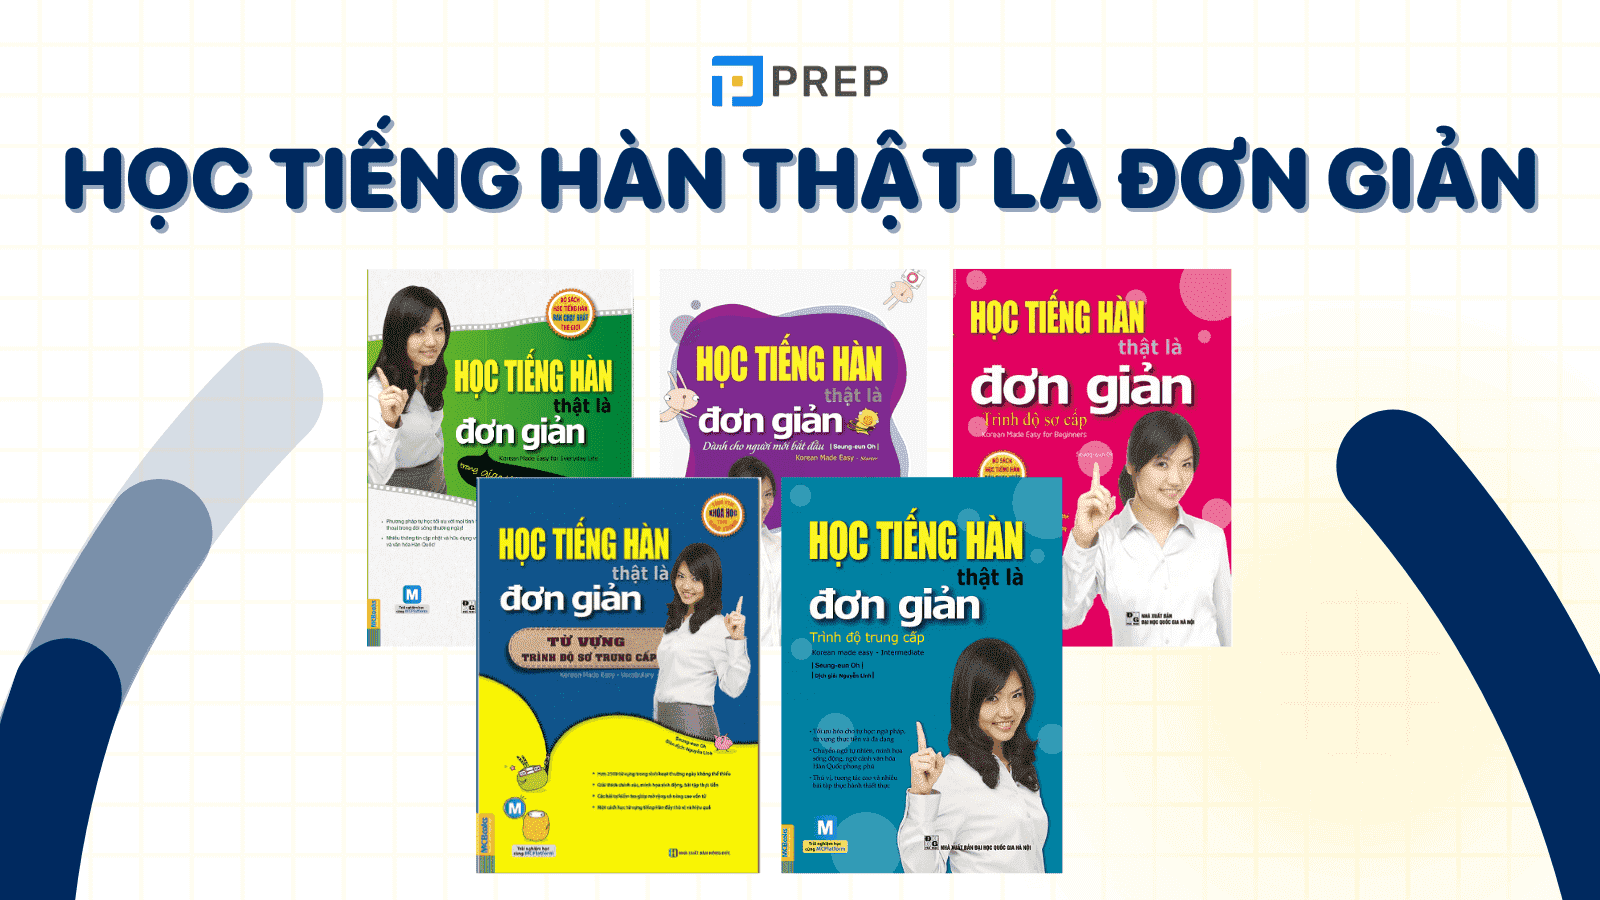 Sách Học tiếng Hàn thật là đơn giản - Chinh phục tiếng Hàn dễ dàng!